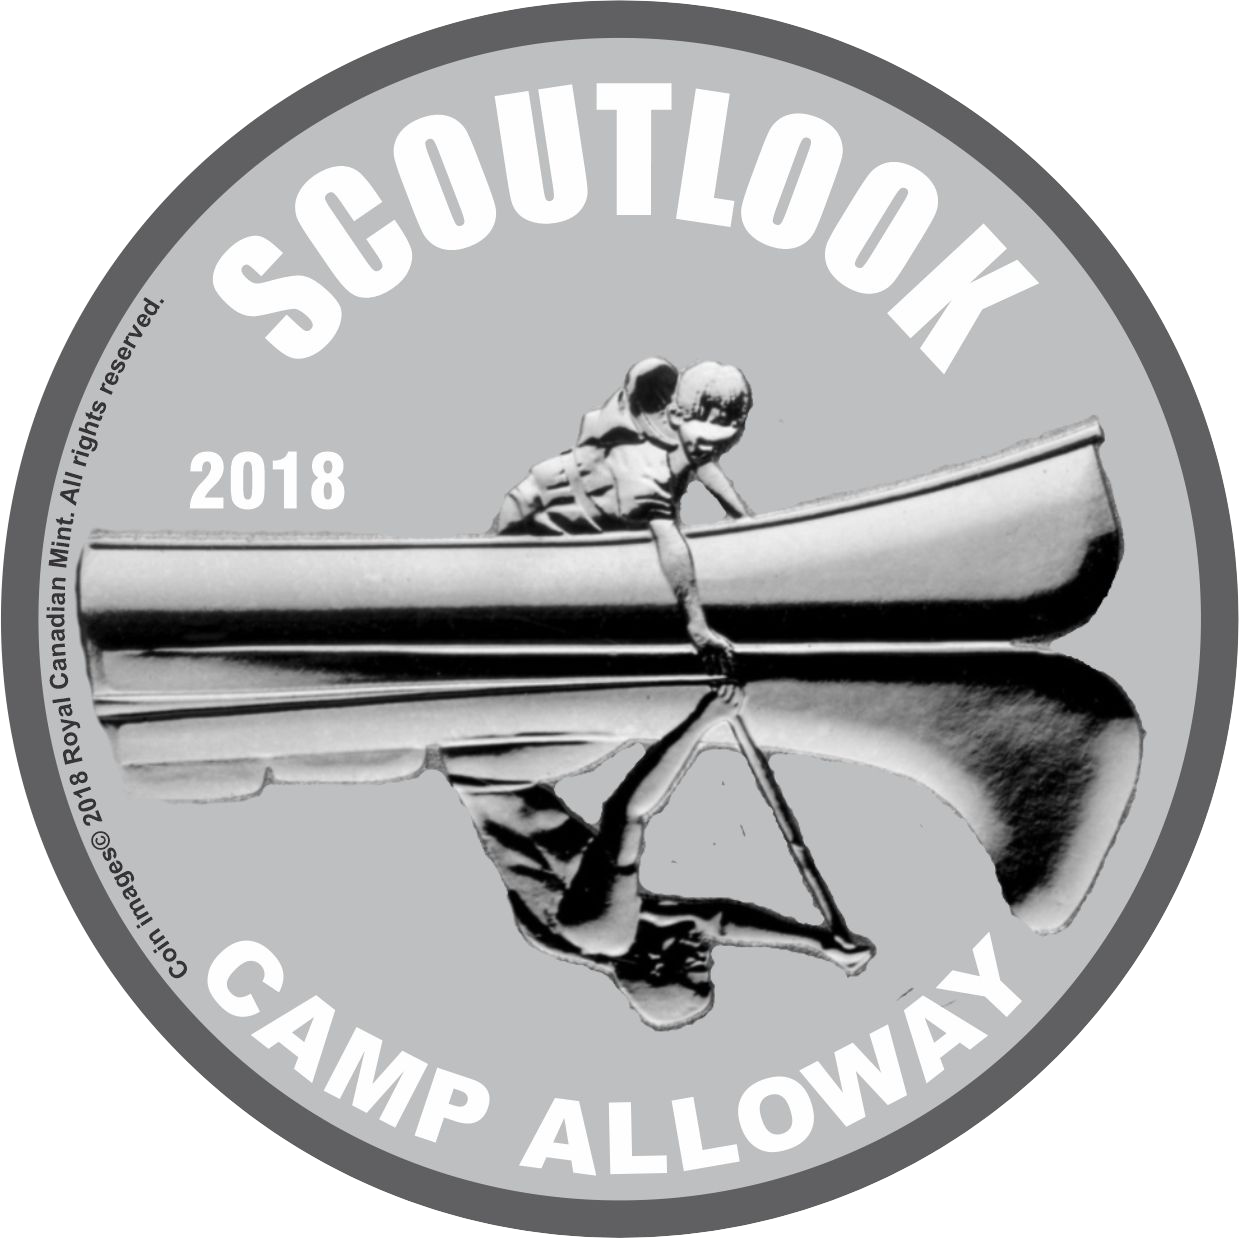 Scoutlook 2018